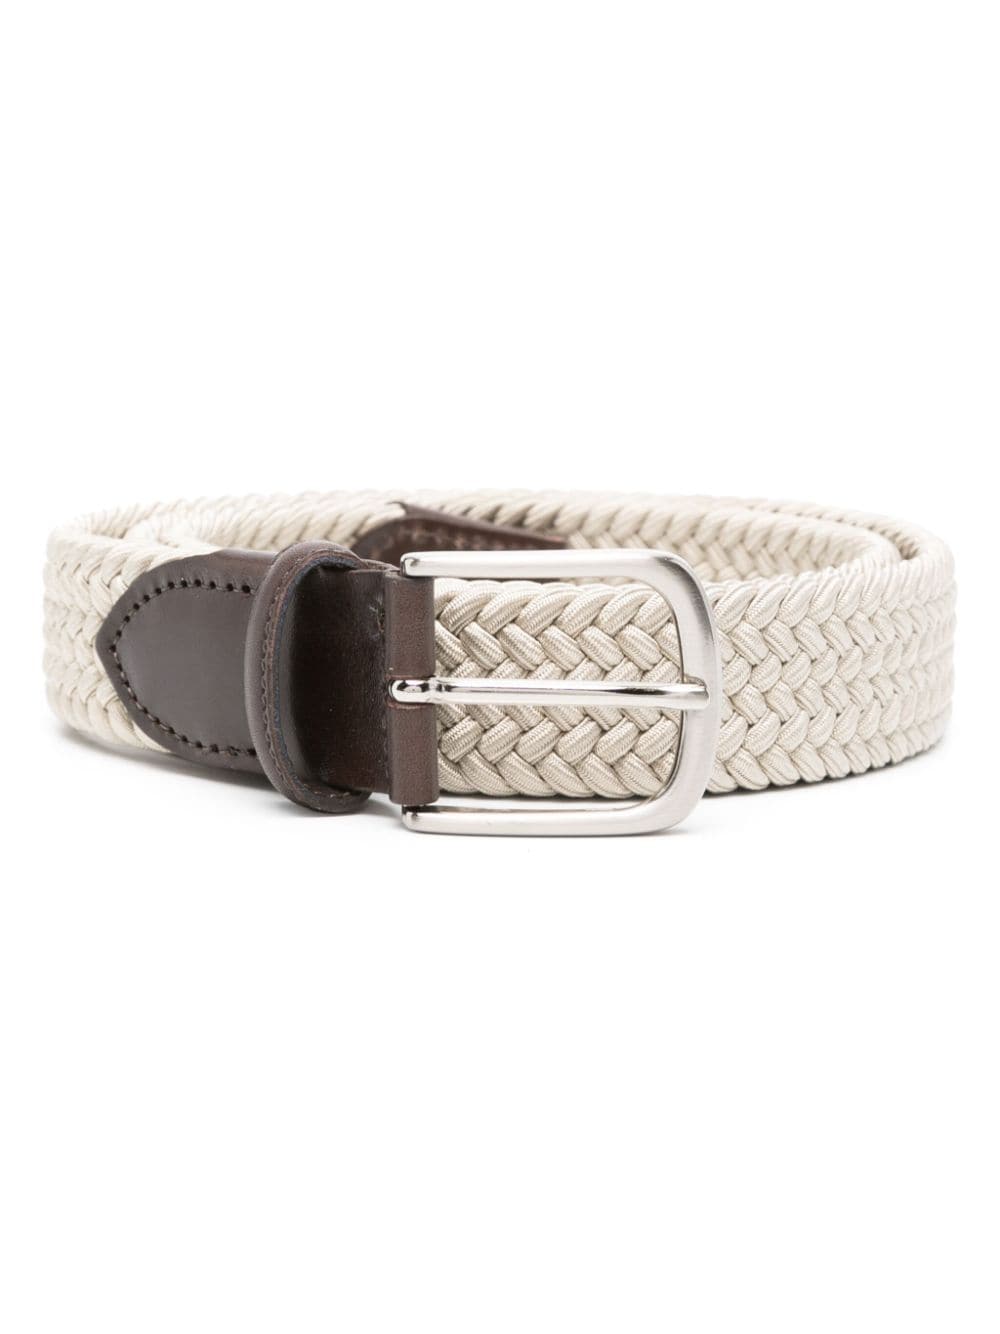 ERALDO leather-trim interwoven belt - Toni neutri